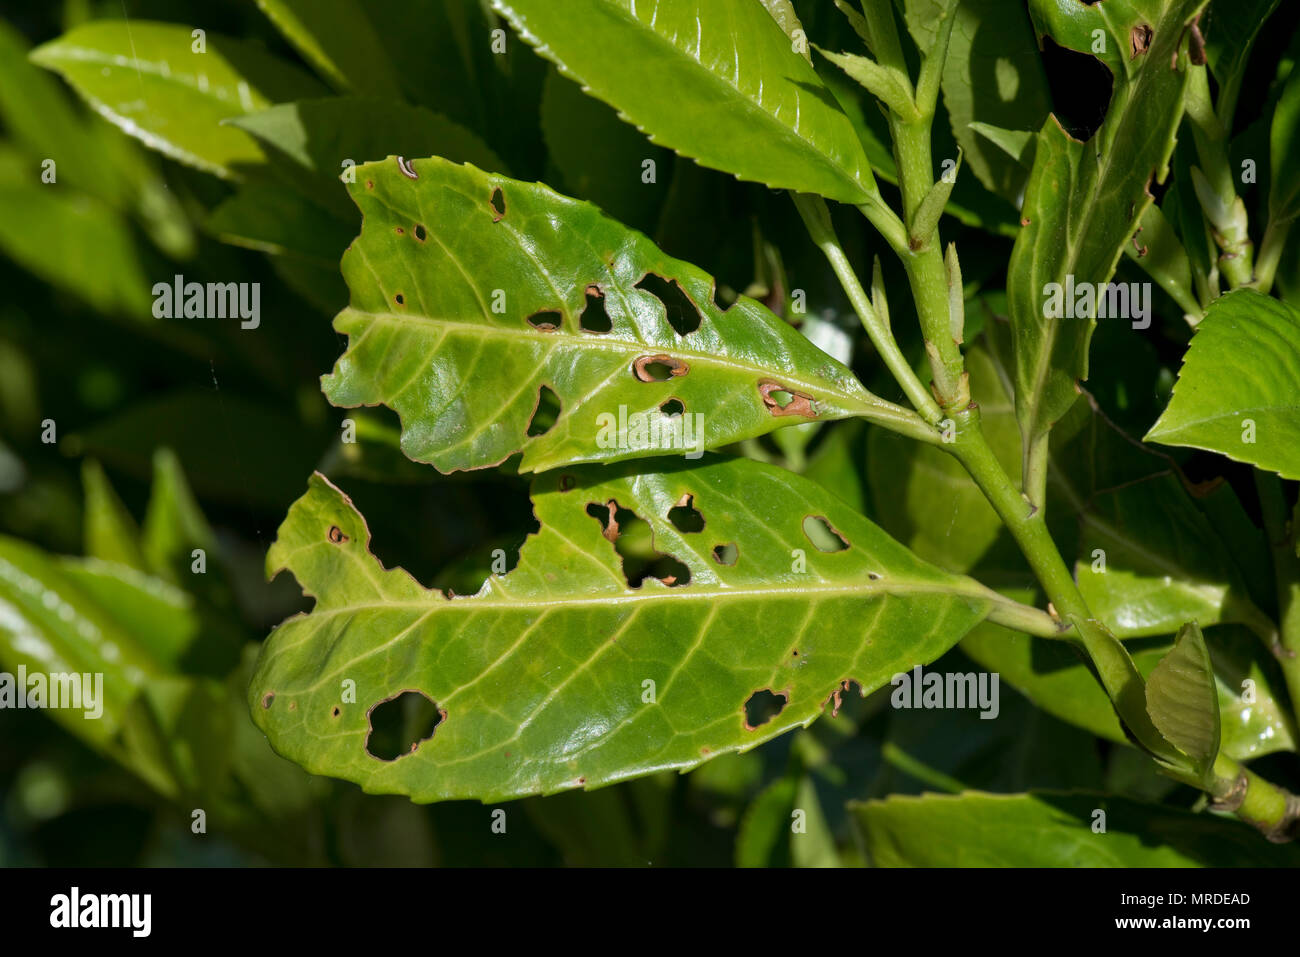 Bakterielle schuss Loch, Pseudomonas syringae, betroffene Blätter Lorbeer, Prunus laurocerasus, in einem Garten Hecke, Mai Stockfoto